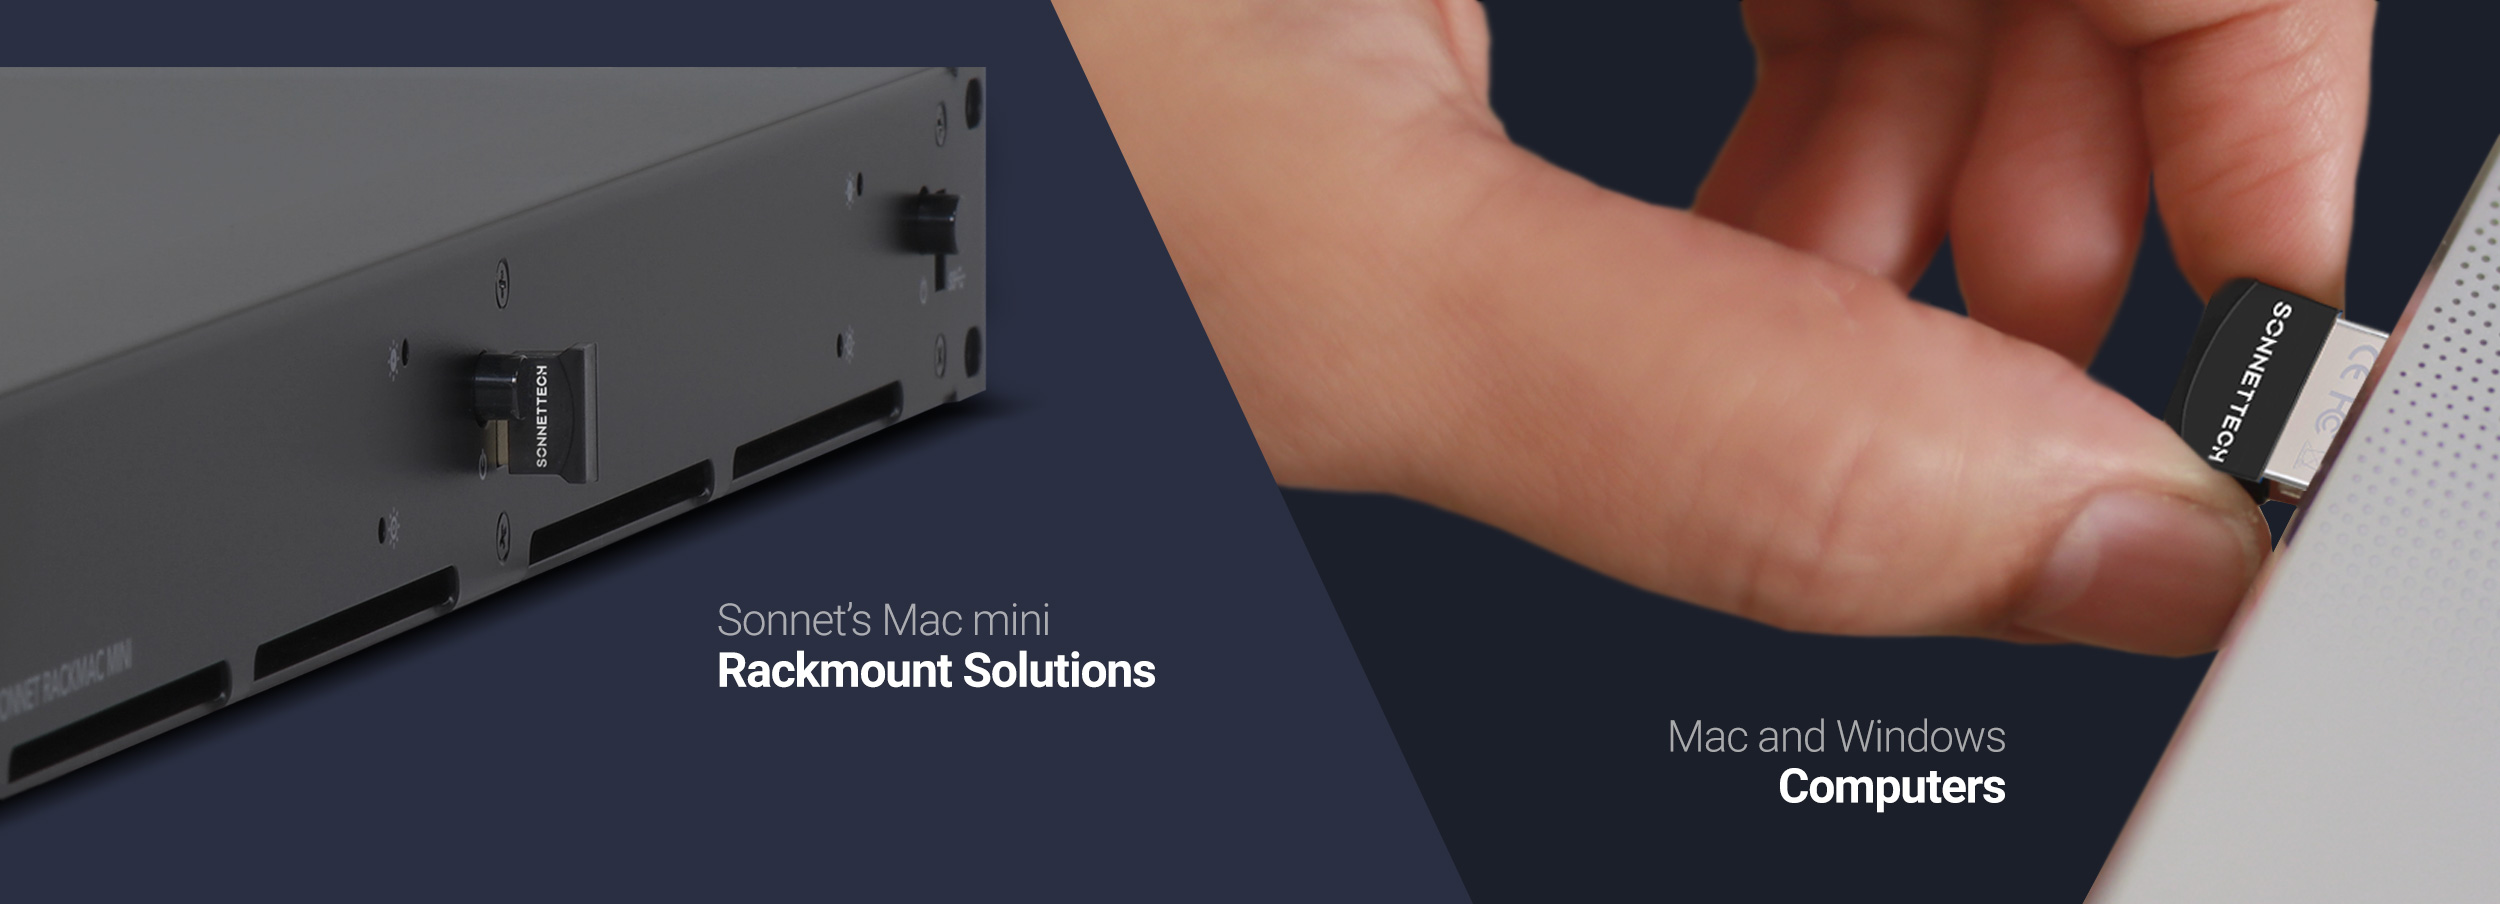 Sonnet Micro Adaptador USB Bluetooth 4.0 de Largo Alcance para Windows y macOS 10.12+